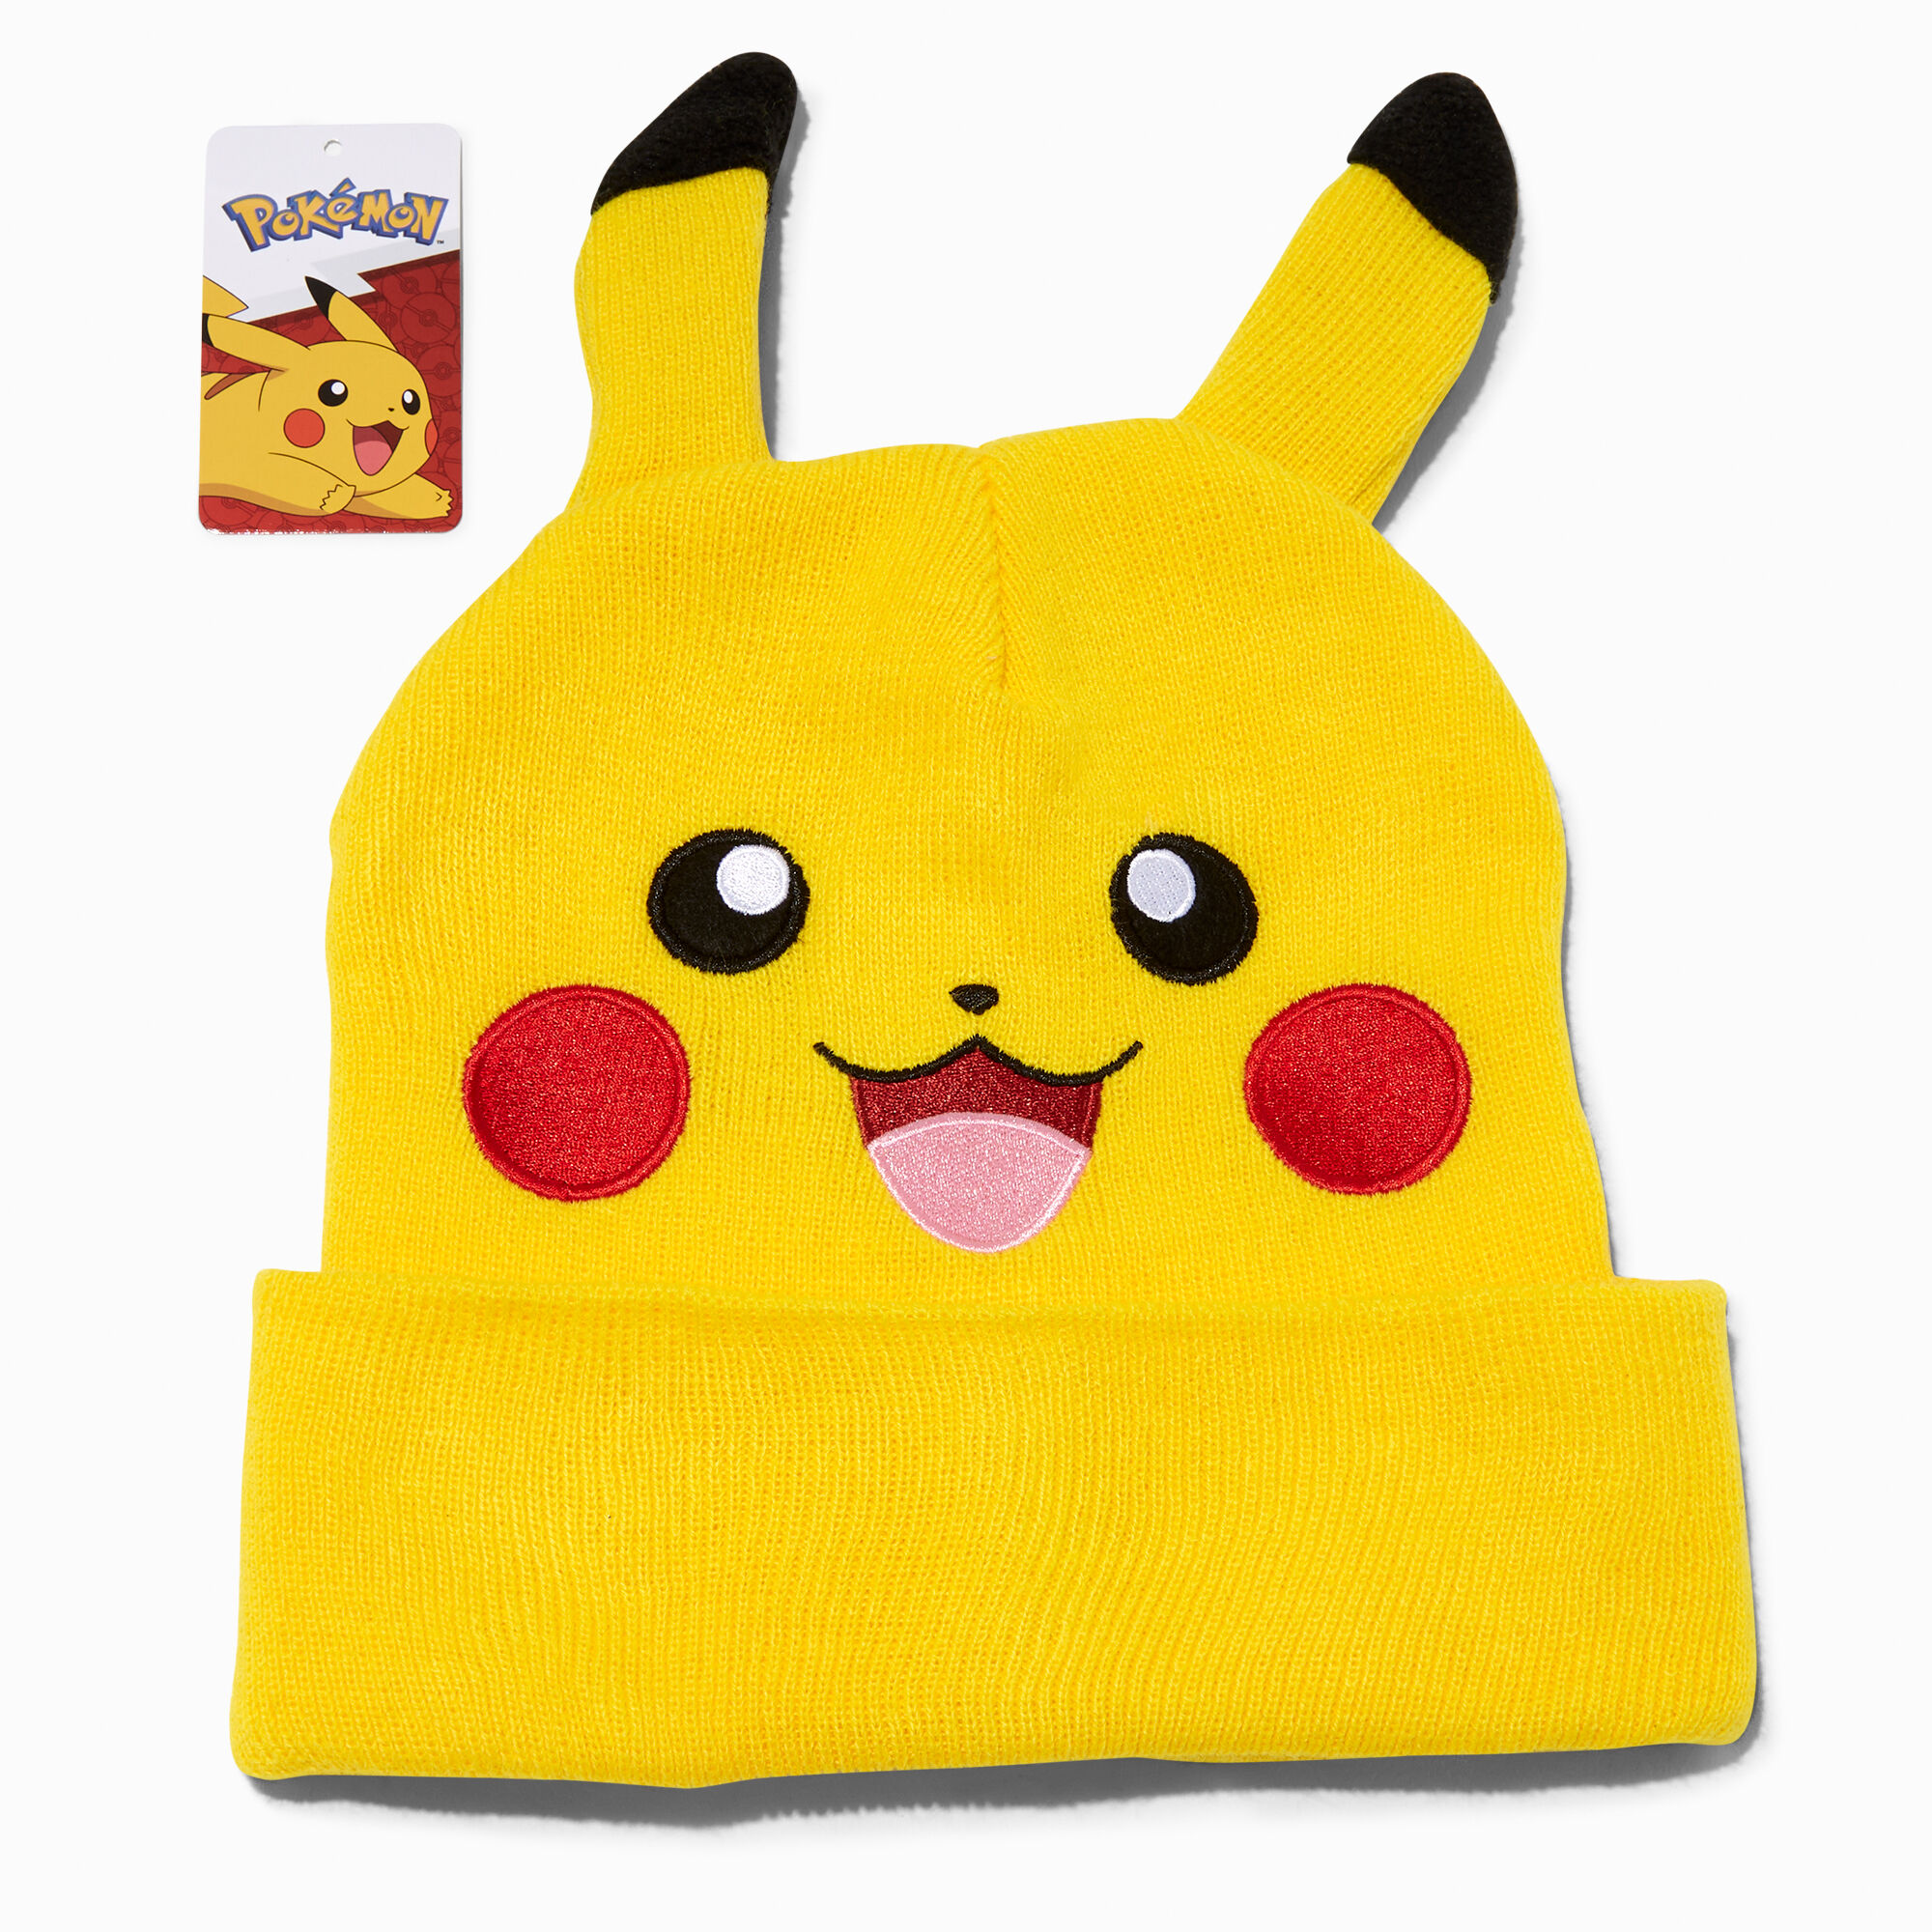 Pokémon™ Pikachu 3D Ear Beanie Claire's US